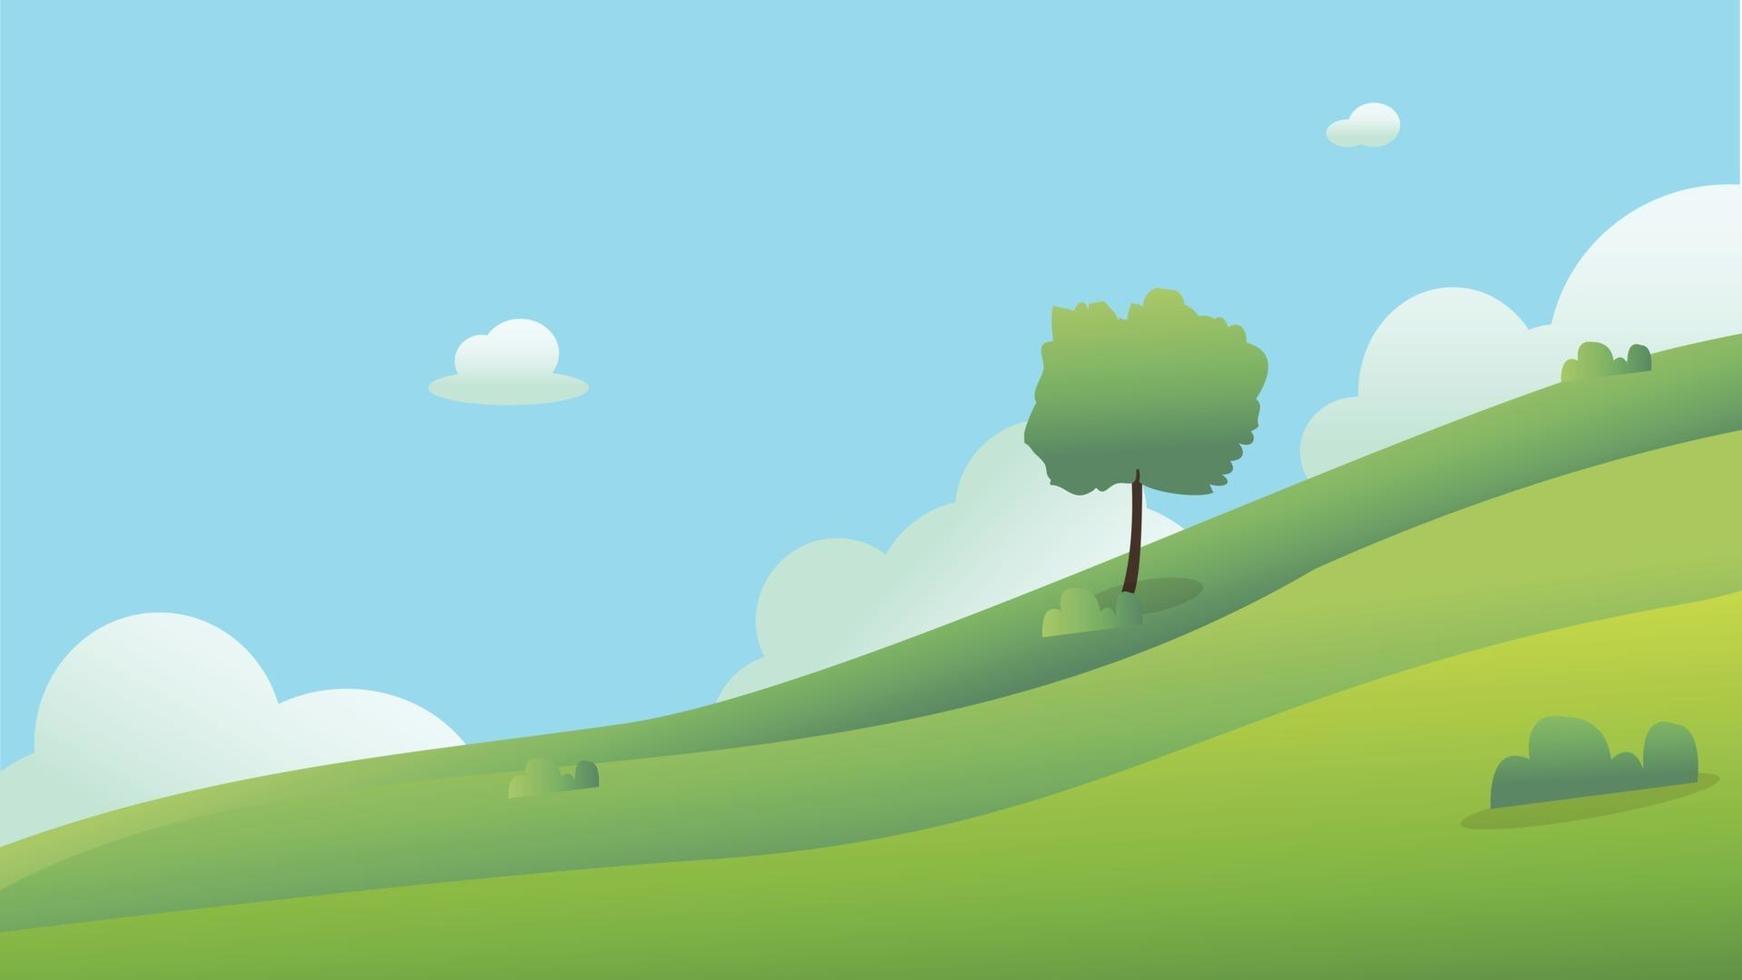 beau paysage de champs avec une aube, collines verdoyantes, ciel bleu de couleur vive, background.meadow landscape vector illustration.green field avec nuages et ciel bleu